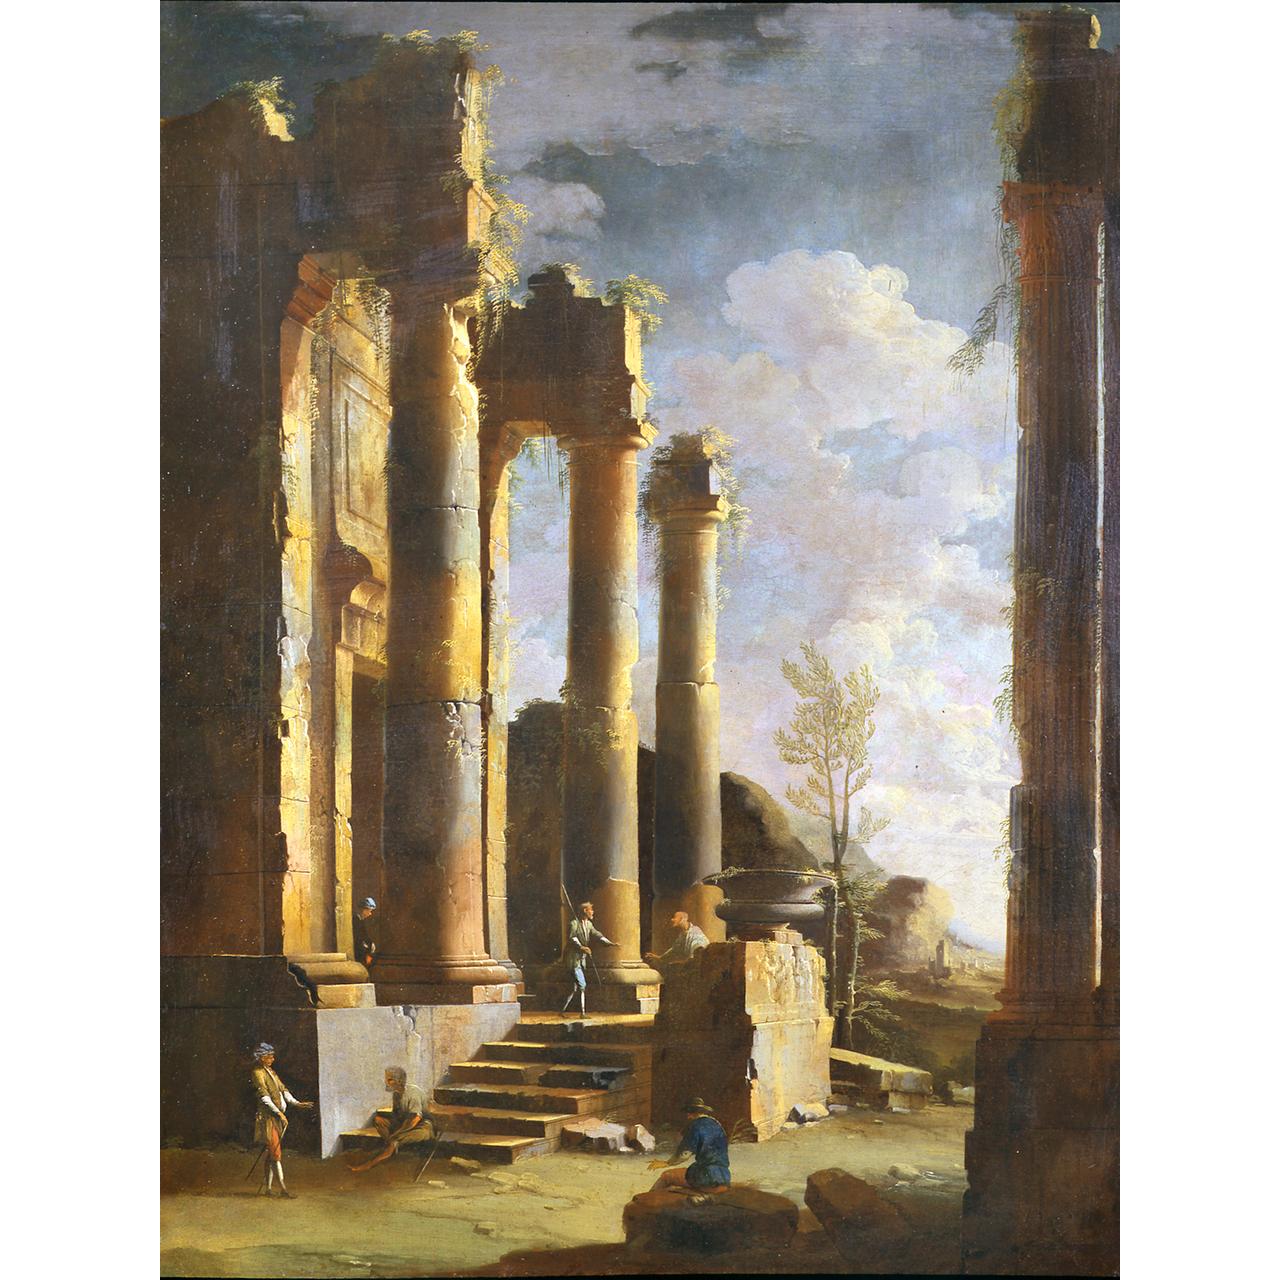 Dipinto: Capriccio con rovine antiche e figure, alba (I) 